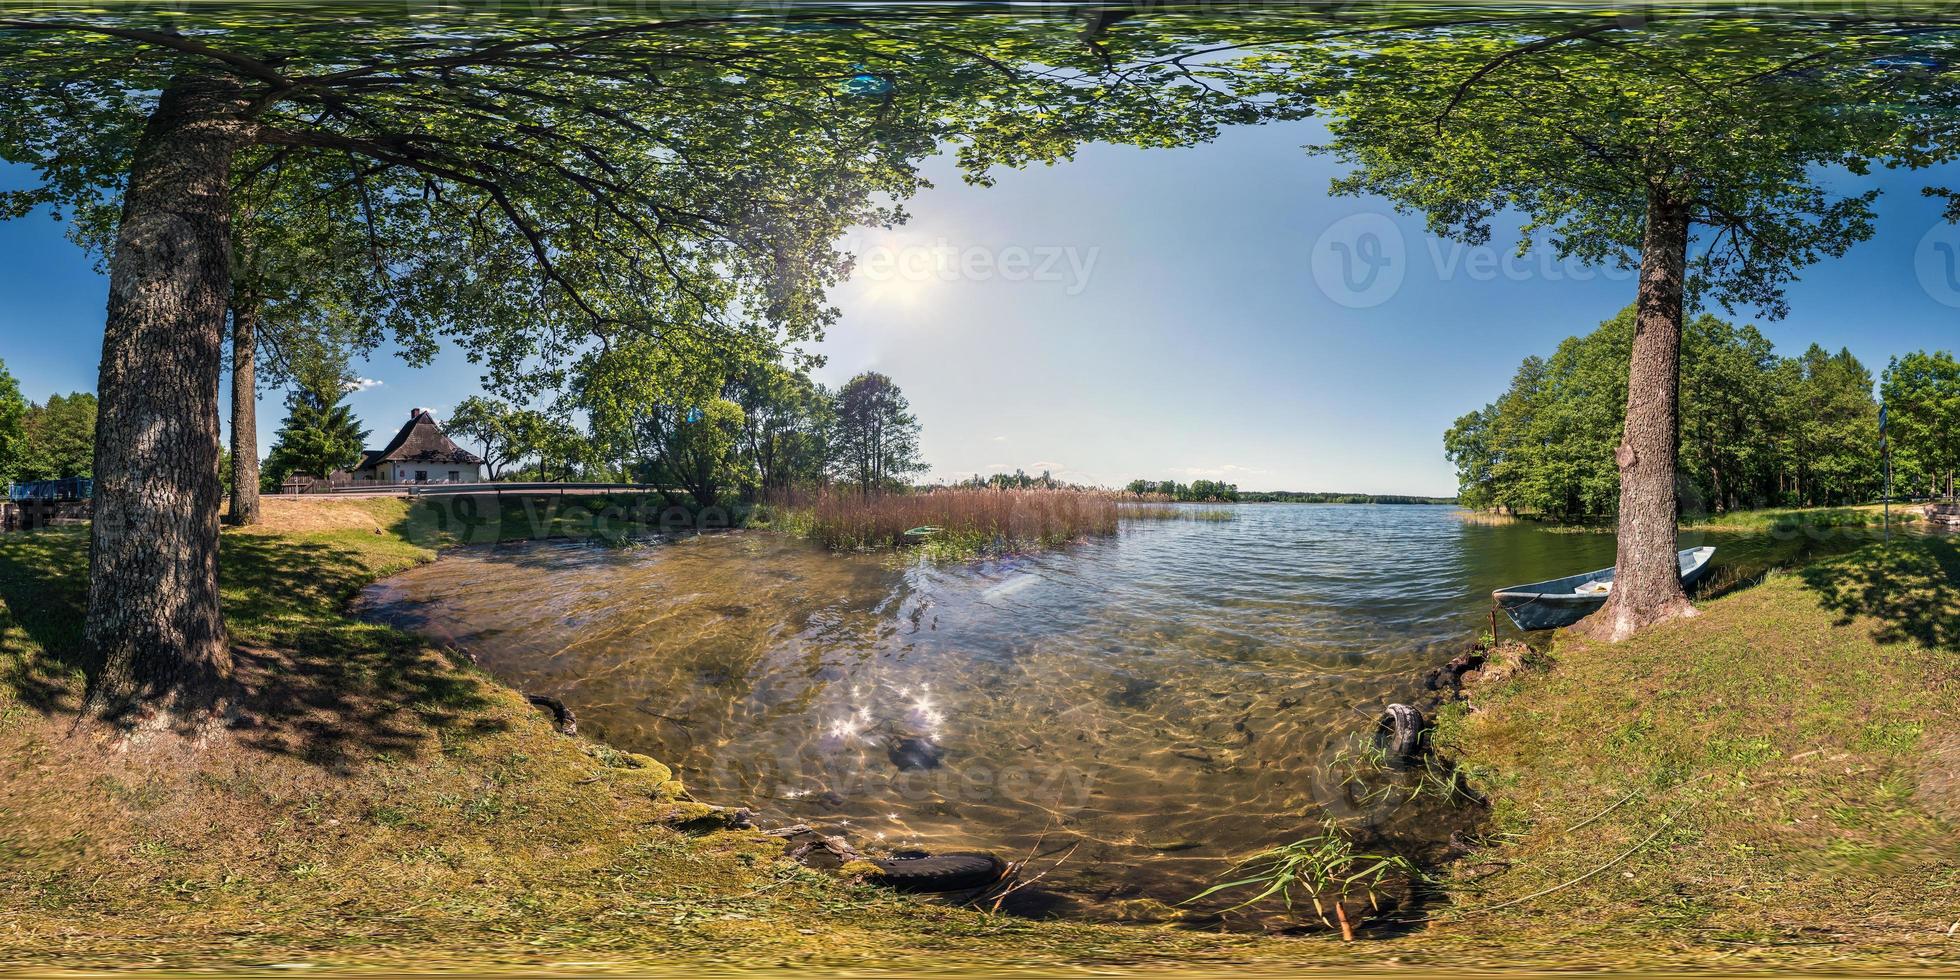 panorama completo sem costura 360 por 180 vista de ângulo na margem do enorme lago da floresta com um barco em dia ensolarado de verão em projeção equirretangular, conteúdo de realidade virtual skybox vr foto